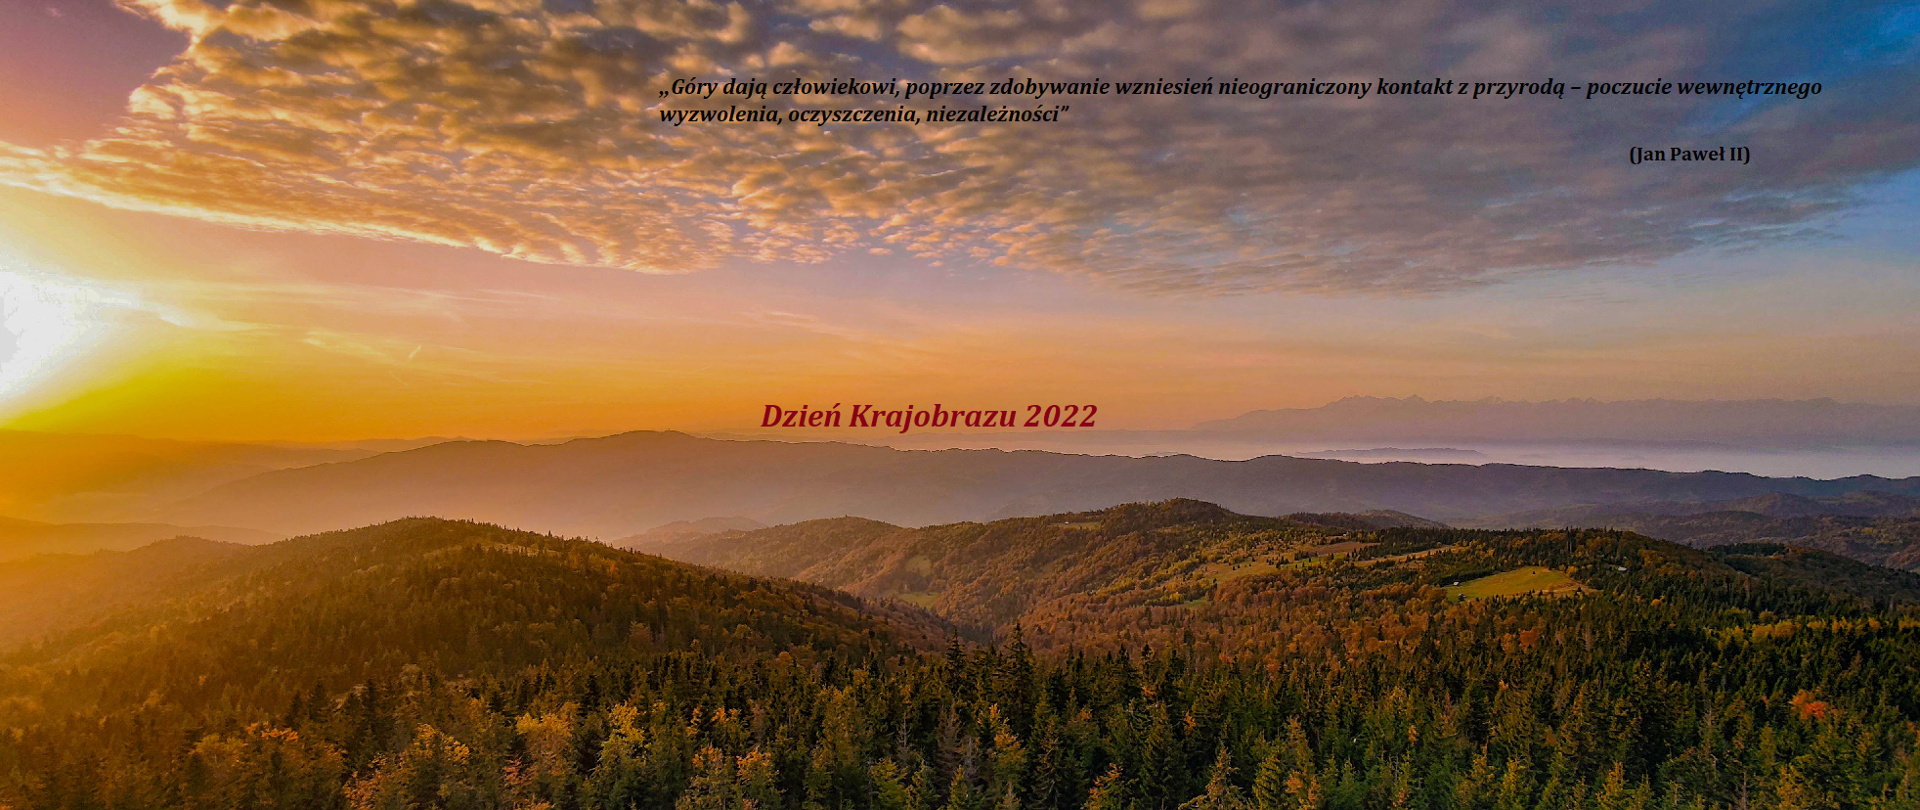 Na pierwszym planie zalesione wzgórza, w prawym rogu słońce tuż nad horyzontem. W oddali zamglone doliny. Na środku napis Dzień krajobrazu 2022.